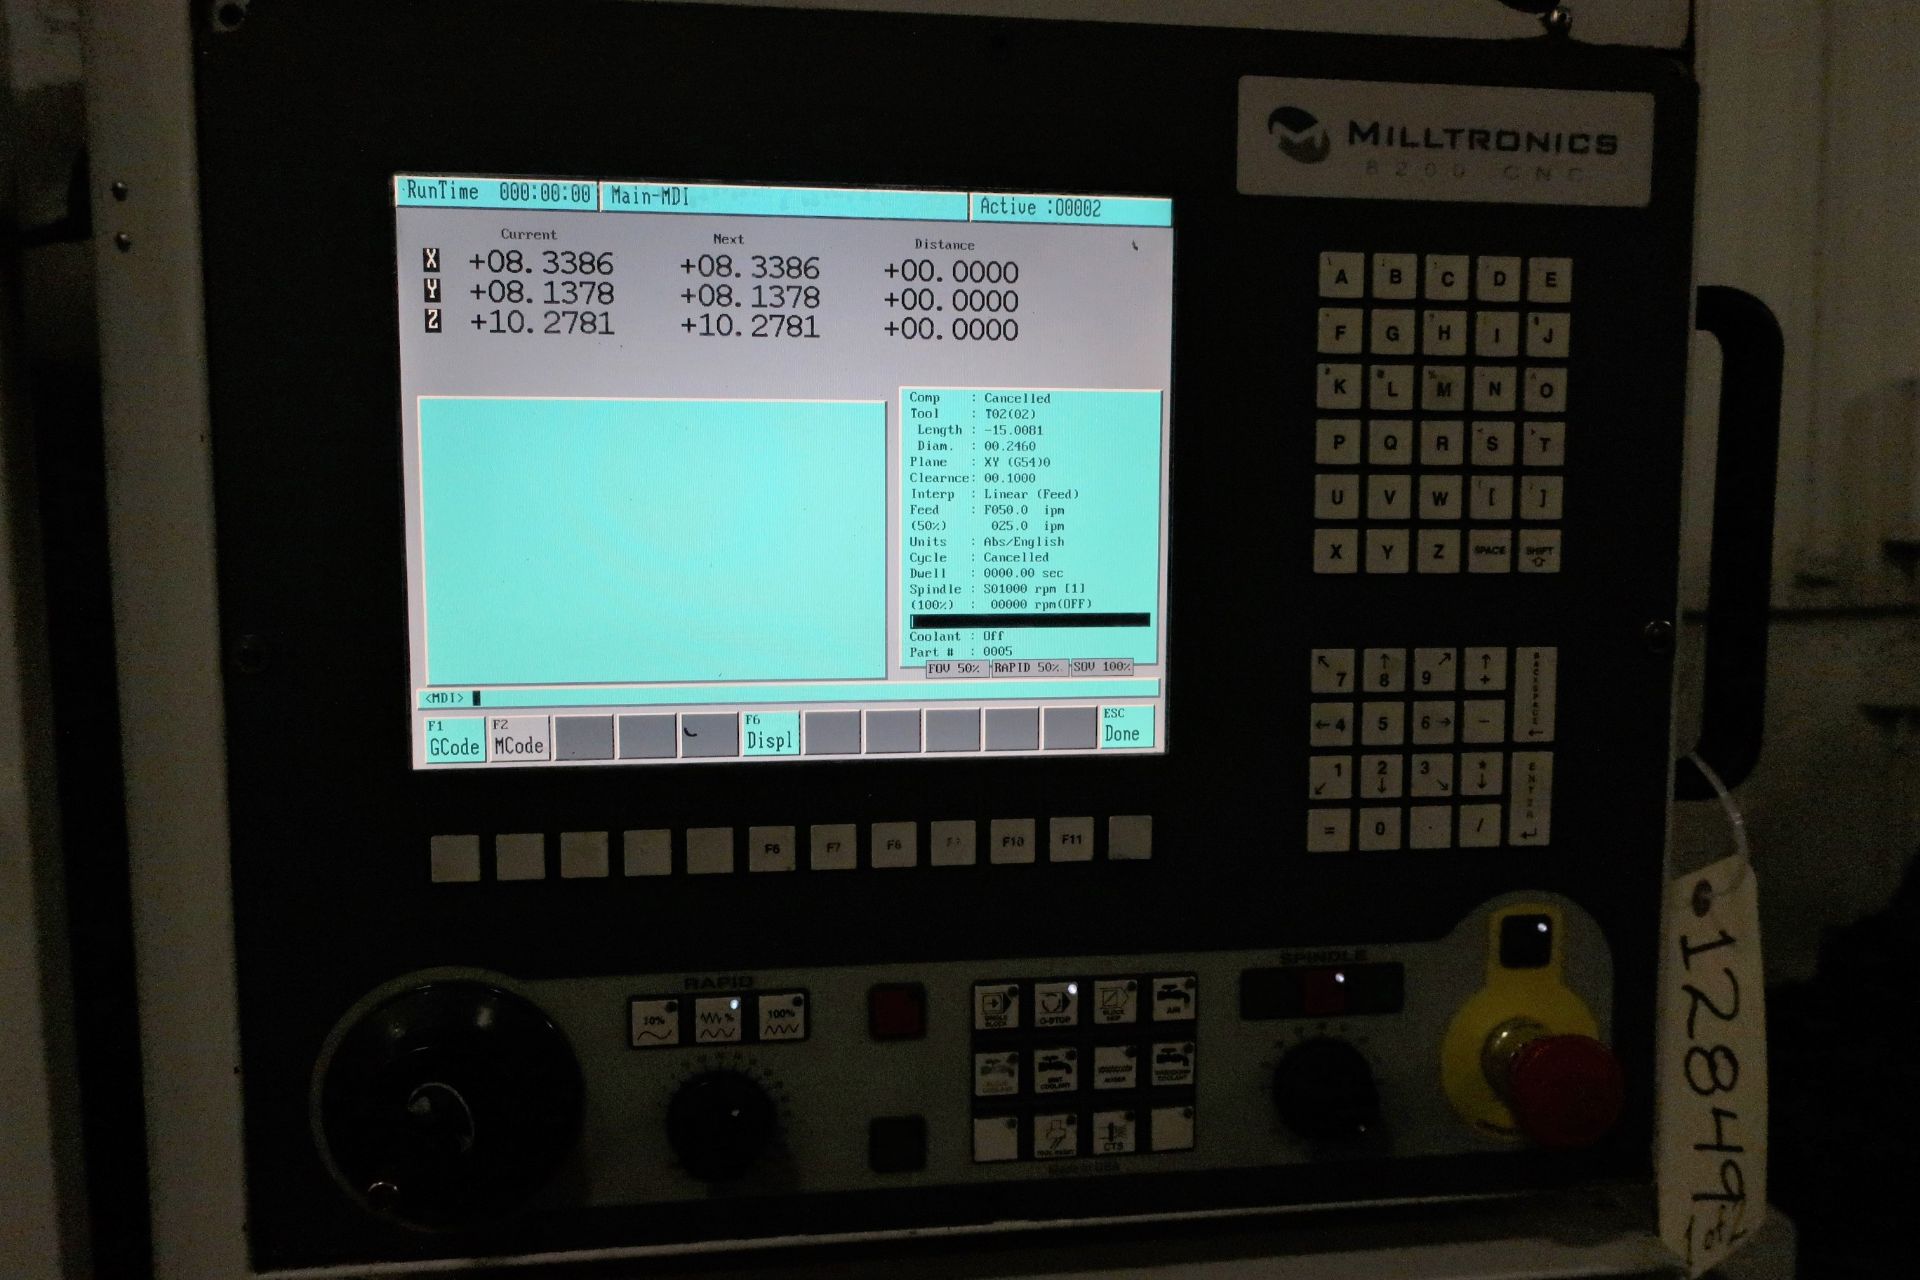 MILLTRONICS TT24 3-AXIS CNC VERTICAL MACHINING CENTER W/PALLET CHANGER, NEW 2012 - Image 2 of 10